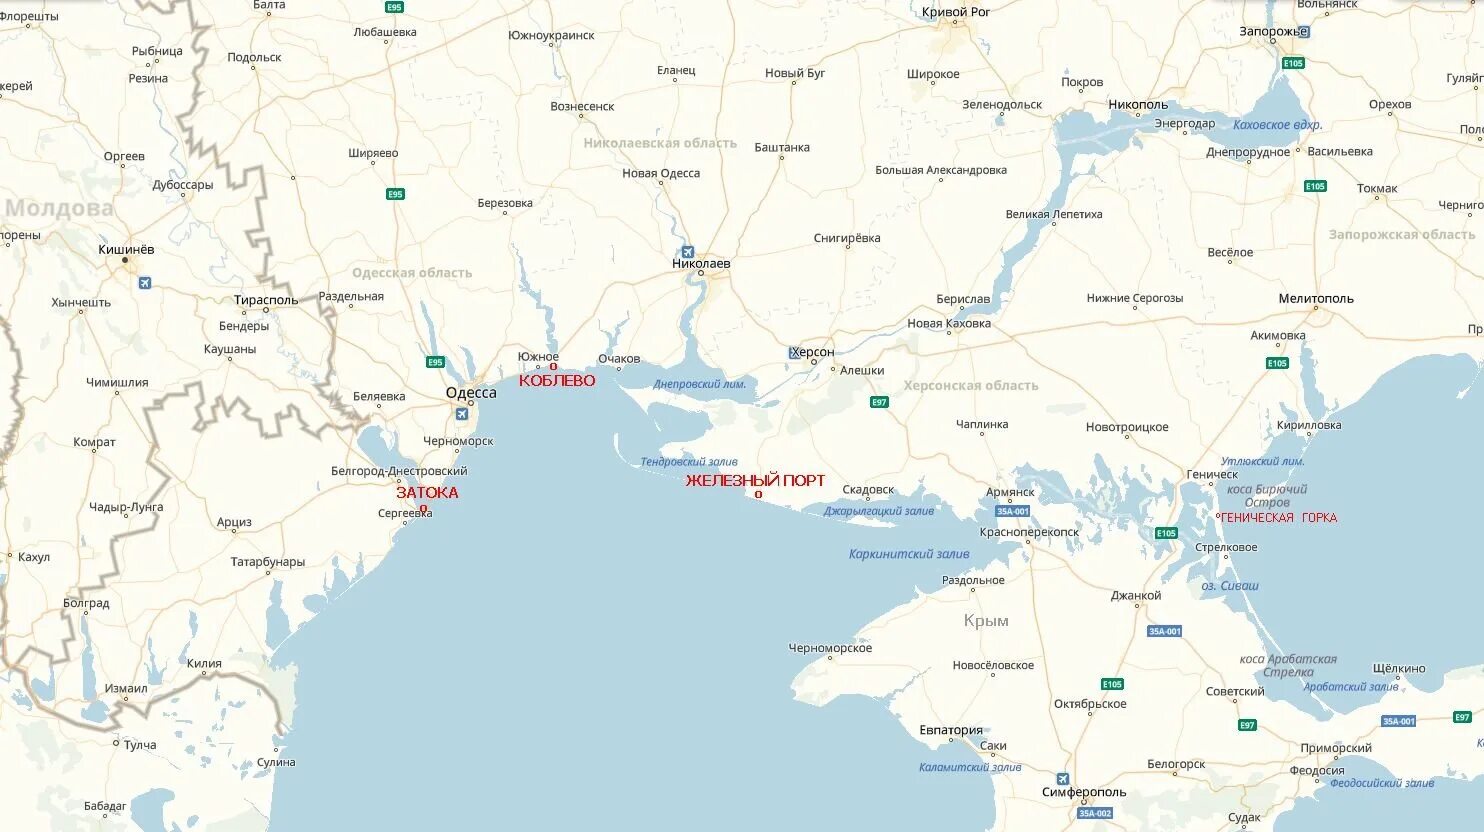 Коблево на карте Украины. Железный порт Украина на карте. Железный порт Херсонская область на карте. Карта Черноморского побережья Украины.